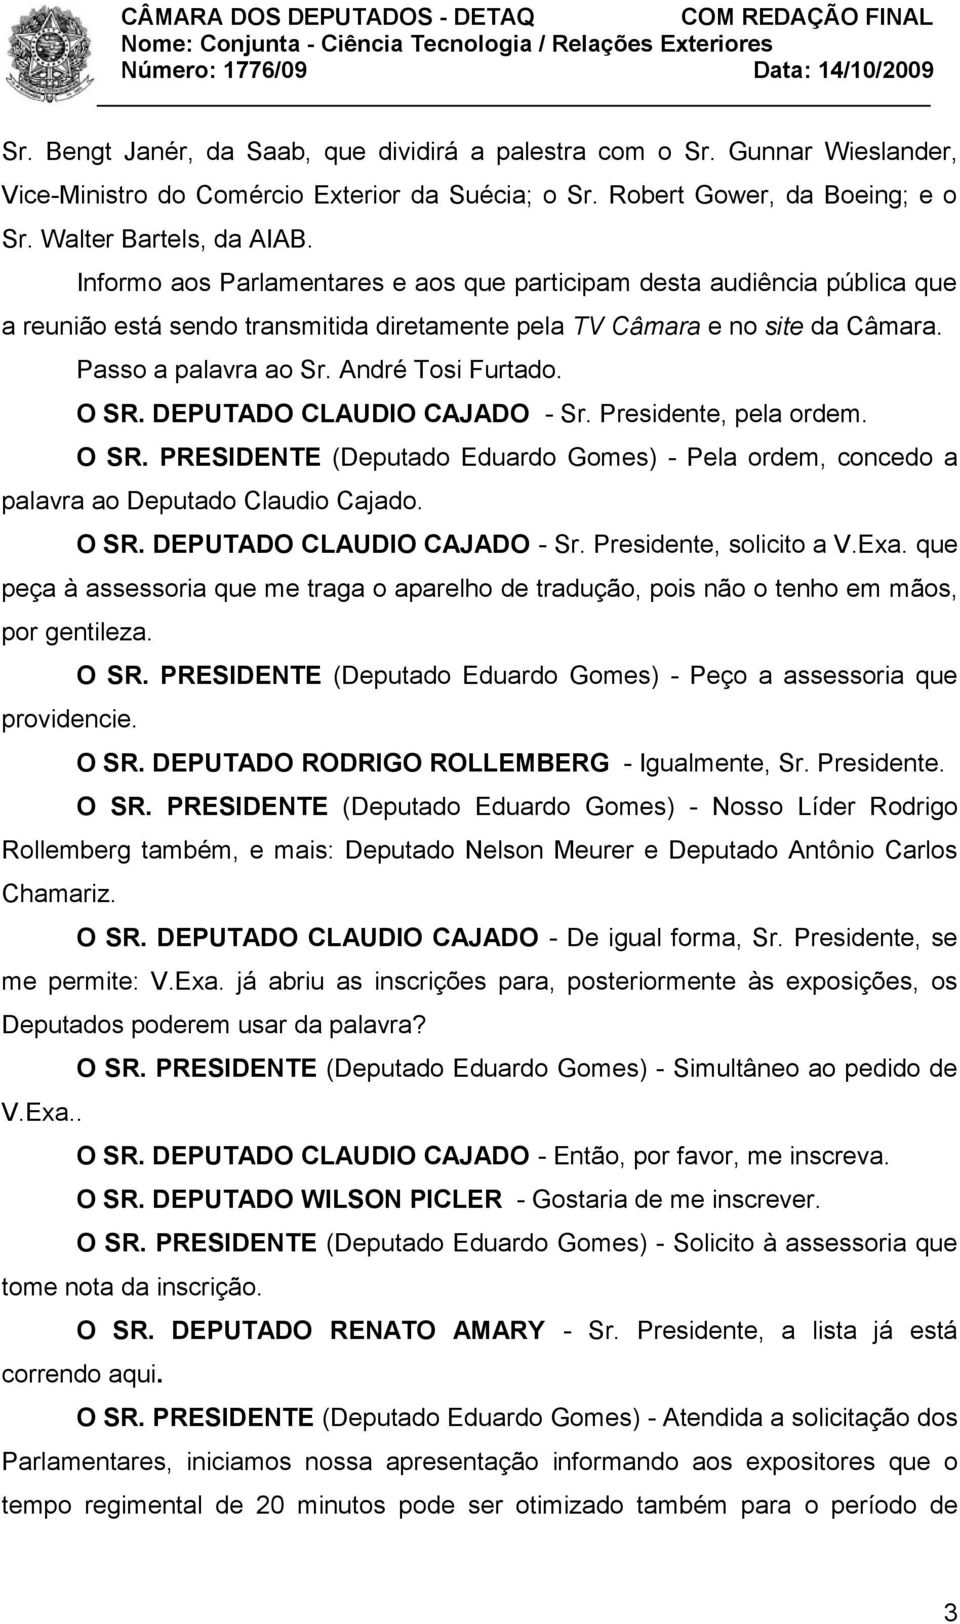 O SR. DEPUTADO CLAUDIO CAJADO - Sr. Presidente, pela ordem. O SR. PRESIDENTE (Deputado Eduardo Gomes) - Pela ordem, concedo a palavra ao Deputado Claudio Cajado. O SR. DEPUTADO CLAUDIO CAJADO - Sr. Presidente, solicito a V.